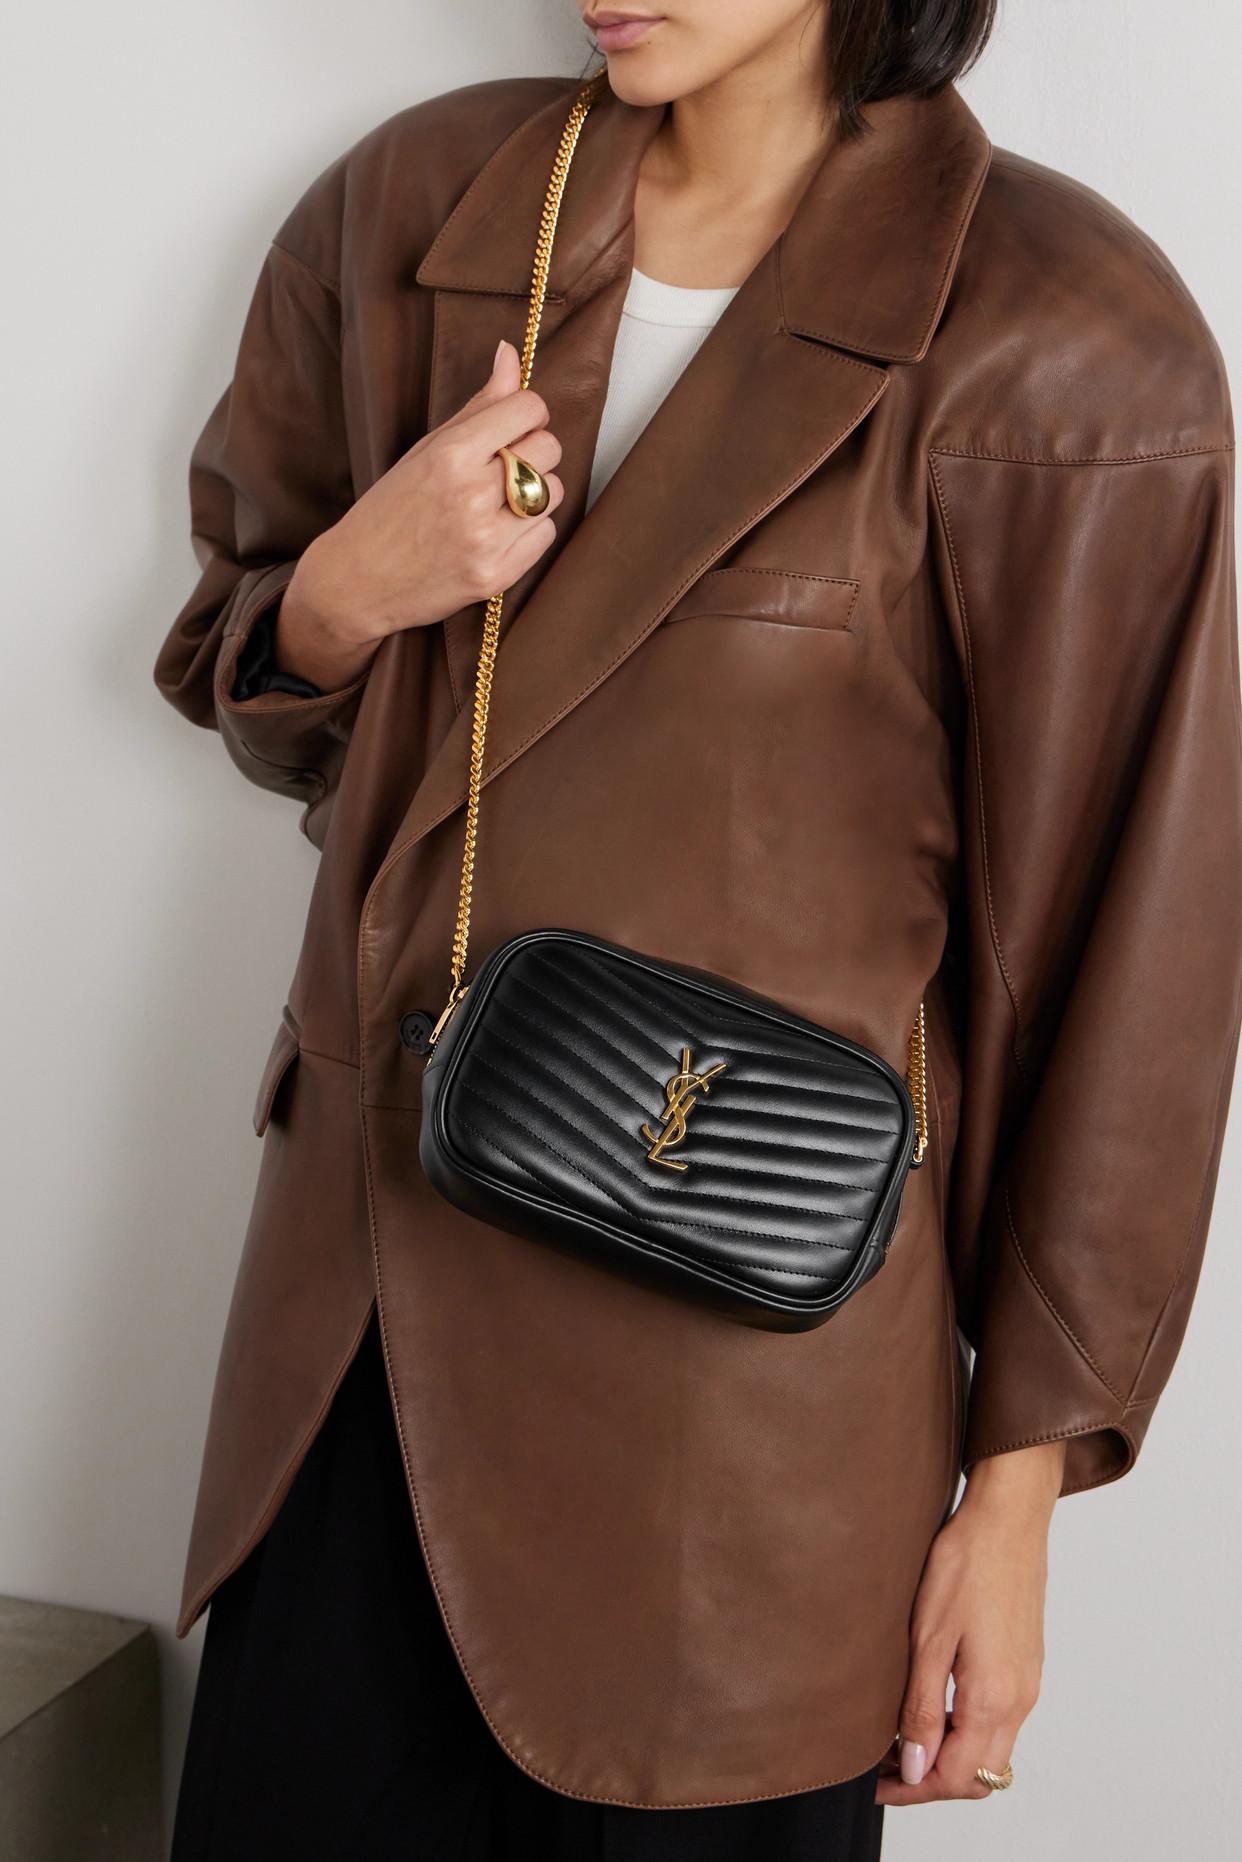 Saint Laurent Lou Mini Leather Shoulder Bag